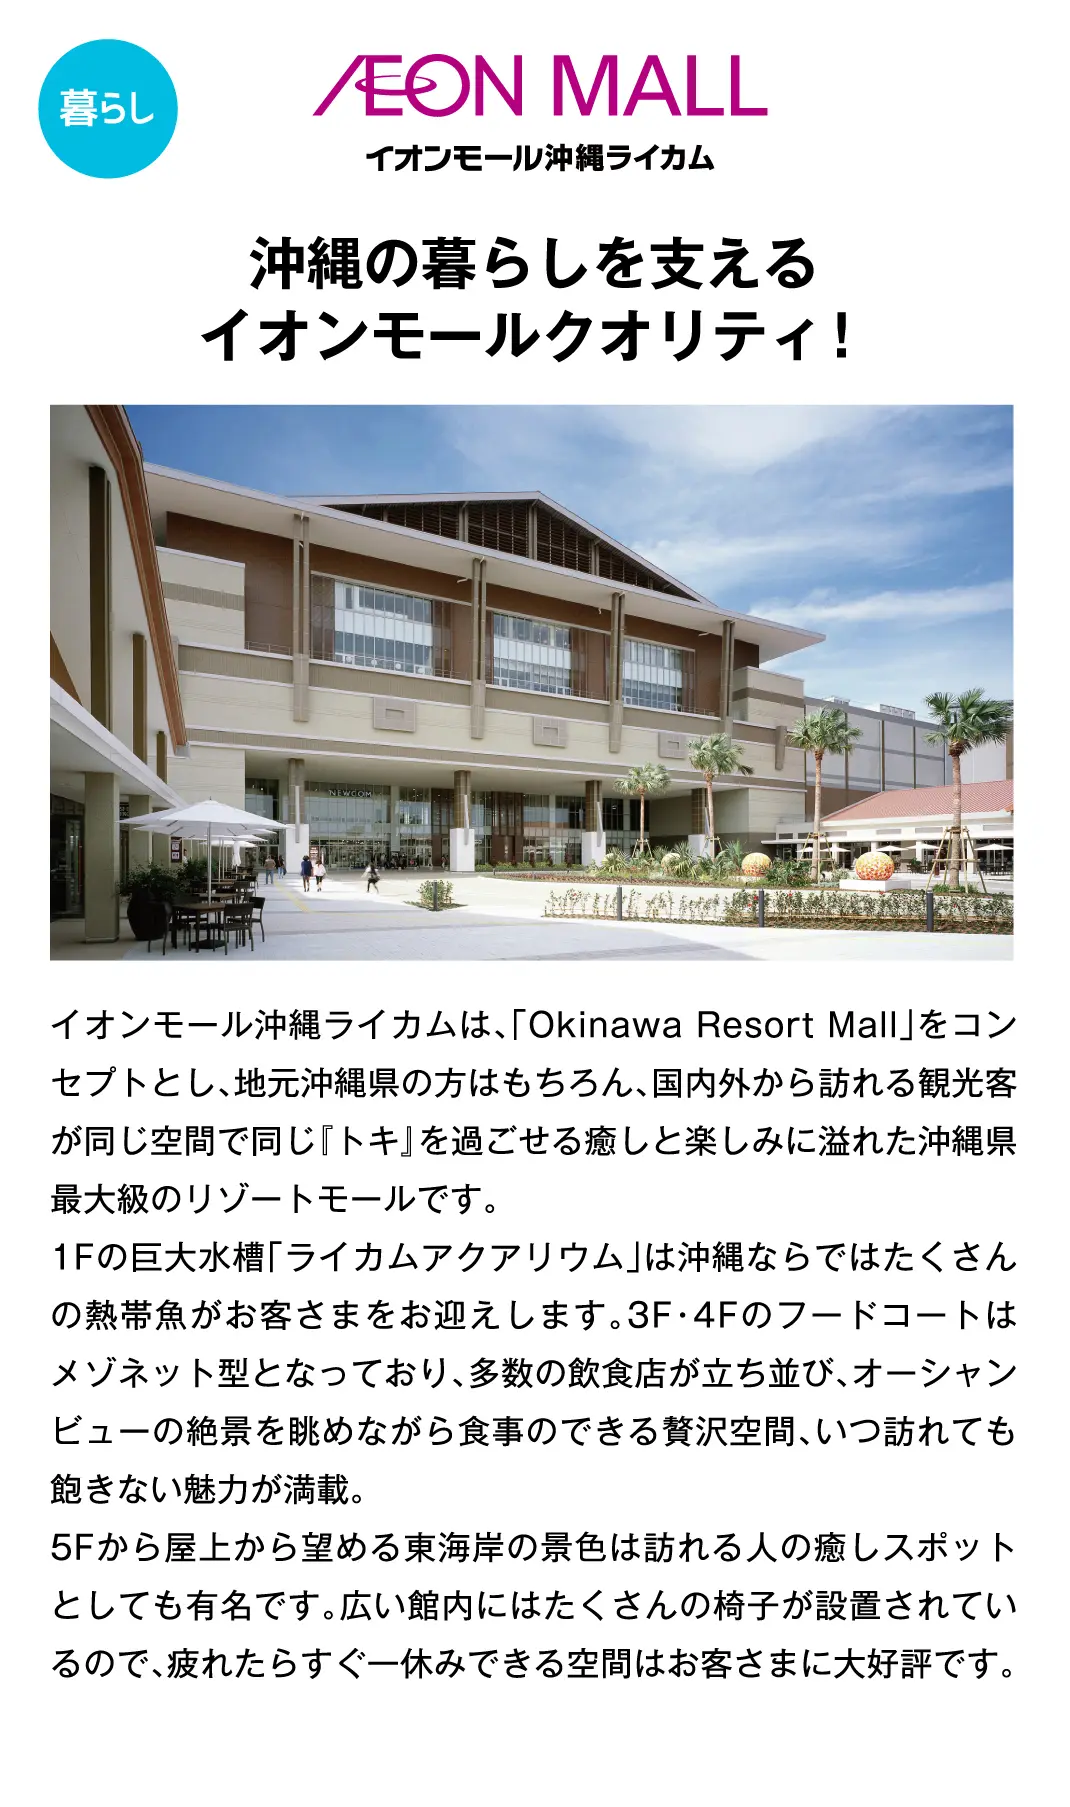 沖縄の暮らしを支えるイオンモールクオリティ！イオンモール沖縄ライカムは、「Okinawa Resort Mall」をコンセプトとし、地元沖縄県の方はもちろん、国内外から訪れる観光客が同じ空間で同じ『トキ』を過ごせる癒しと楽しみに溢れた沖縄県最大級のリゾートモールです。1Fの巨大水槽「ライカムアクアリウム」は沖縄ならではたくさんの熱帯魚がお客さまをお迎えします。3F・4Fのフードコートはメゾネット型となっており、多数の飲食店が立ち並び、オーシャンビューの絶景を眺めながら食事のできる贅沢空間、いつ訪れても飽きない魅力が満載。5Fから屋上から望める東海岸の景色は訪れる人の癒しスポットとしても有名です。広い館内にはたくさんの椅子が設置されているので、疲れたらすぐ一休みできる空間はお客さまに大好評です。